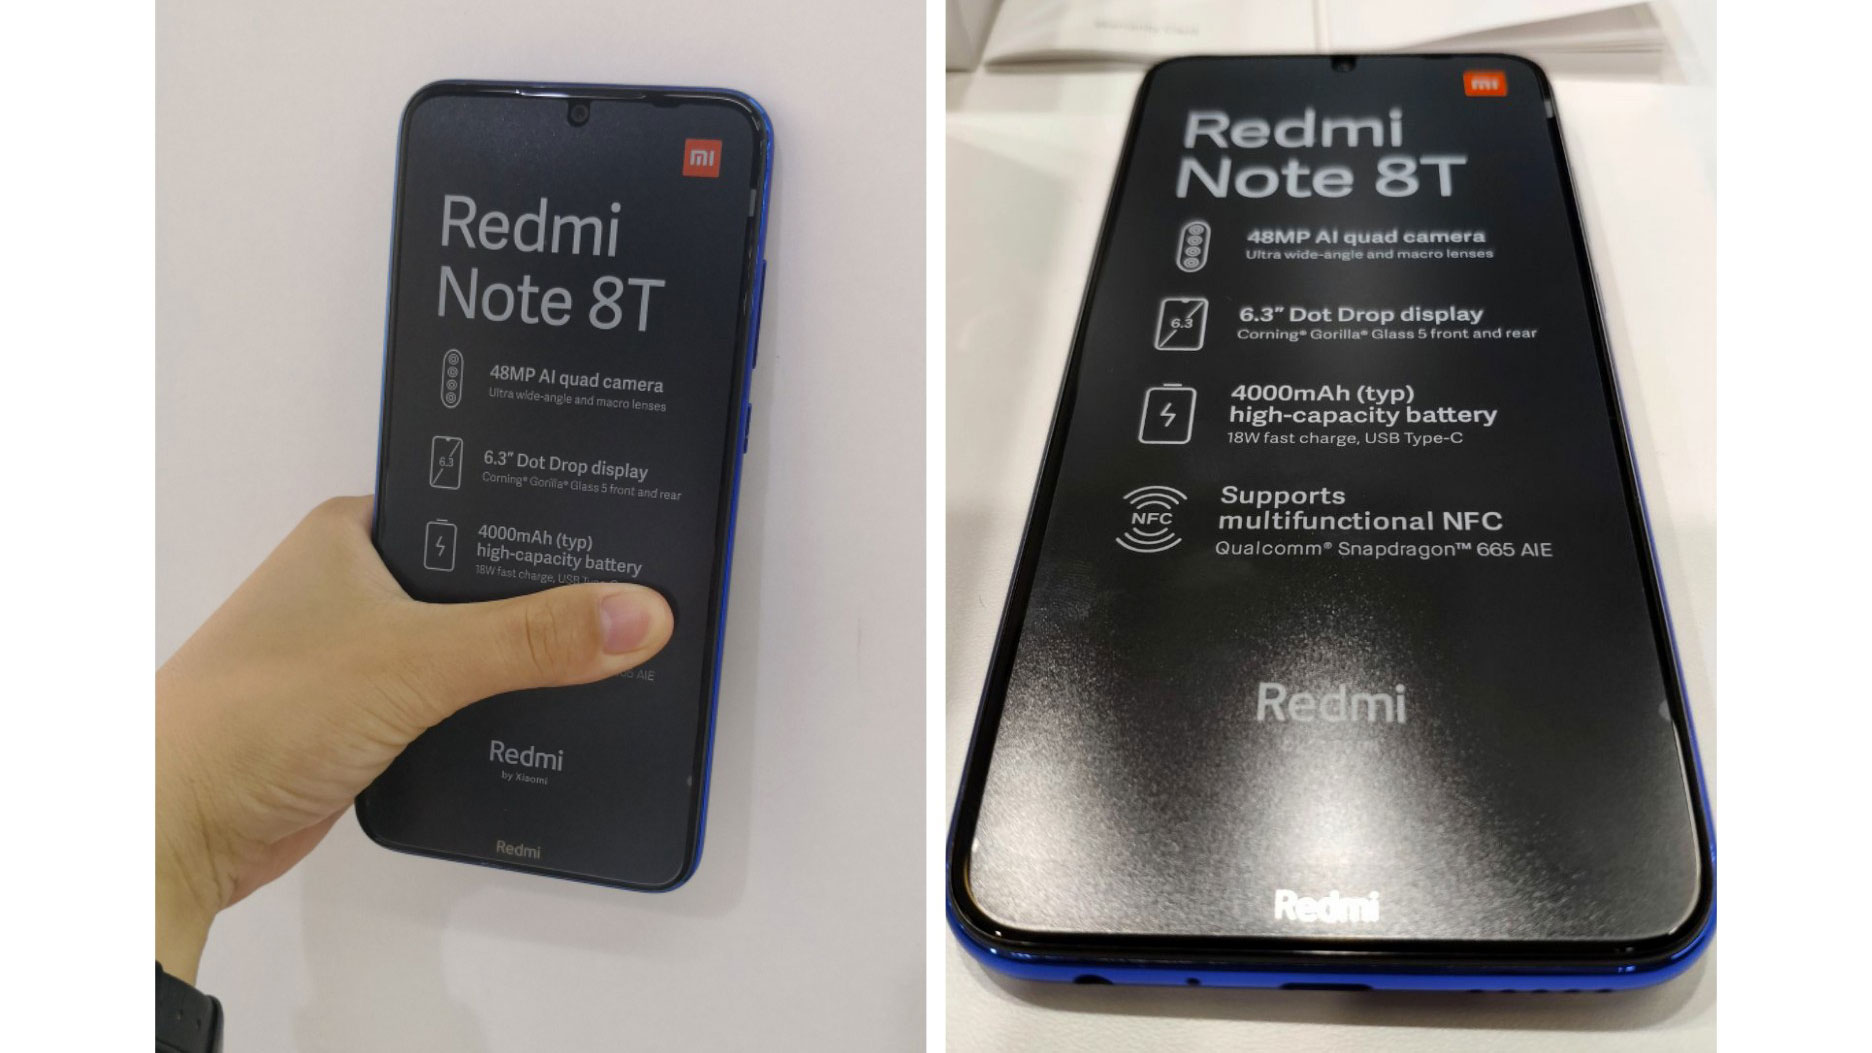 ردمی نوت ۸ تی (Redmi Note 8T) با اسنپدراگون ۶۶۵ و پشتیبانی از NFC معرفی خواهد شد